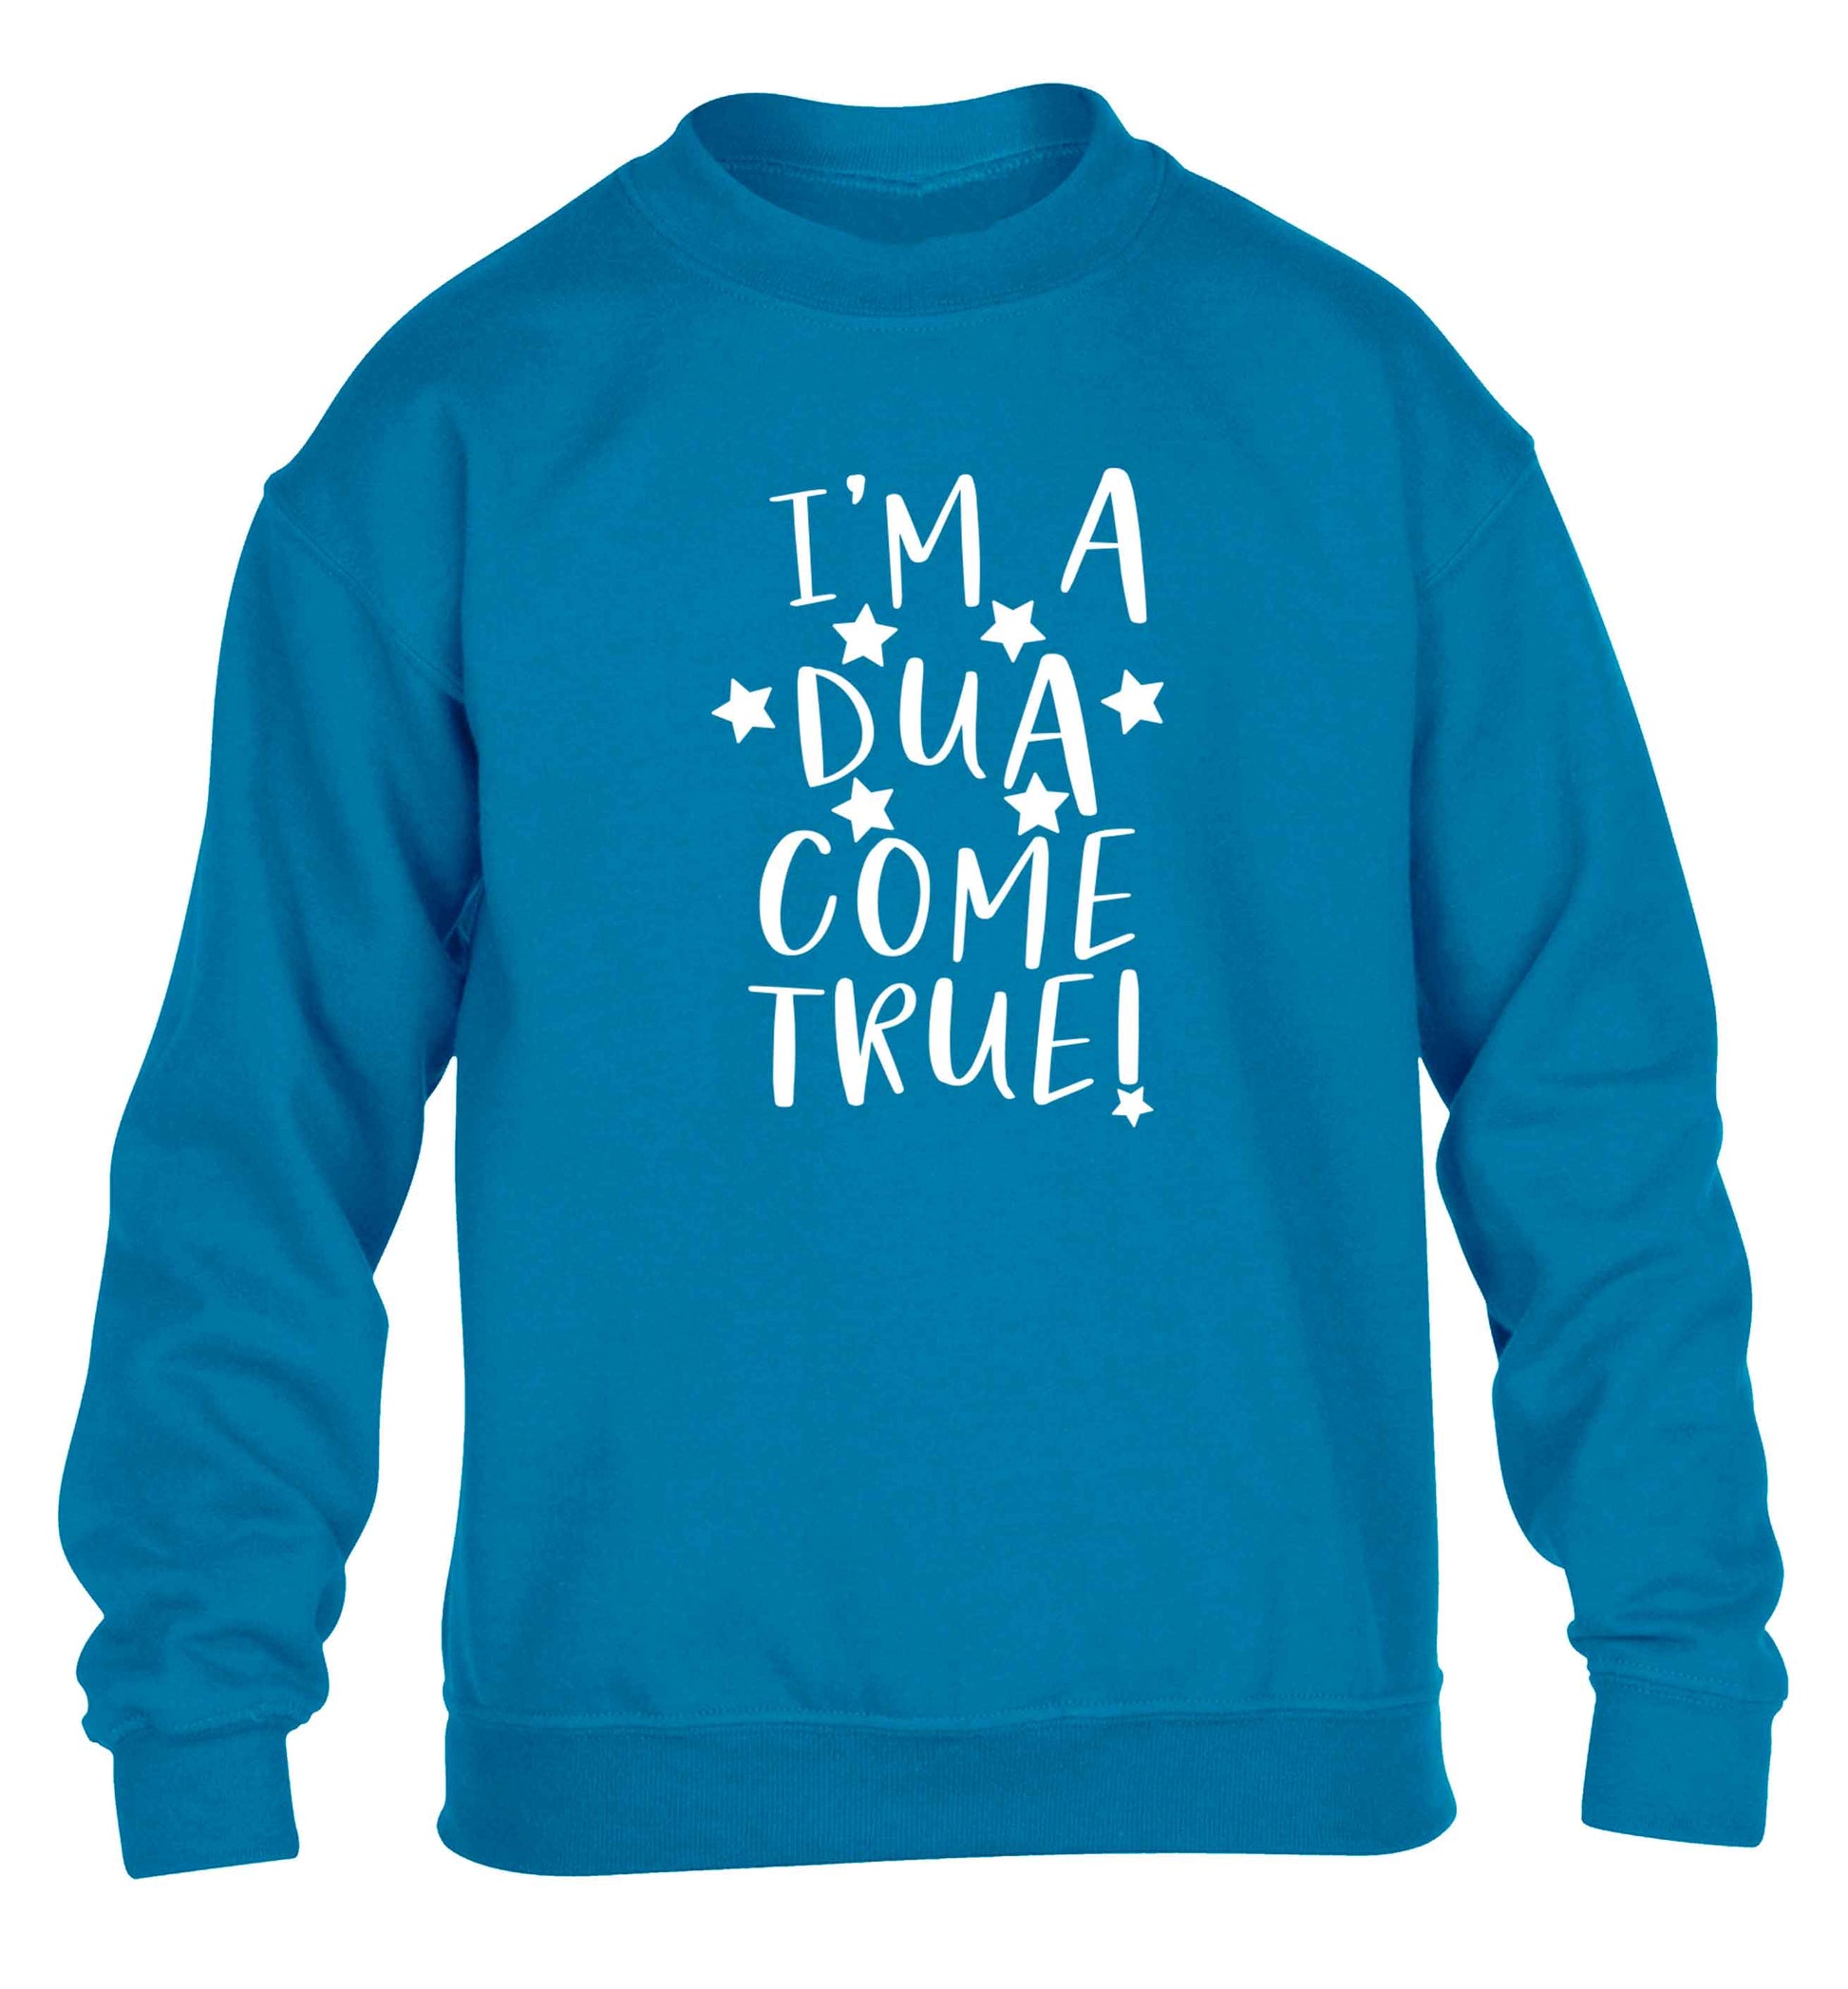 I'm a dua come true children's blue sweater 12-13 Years